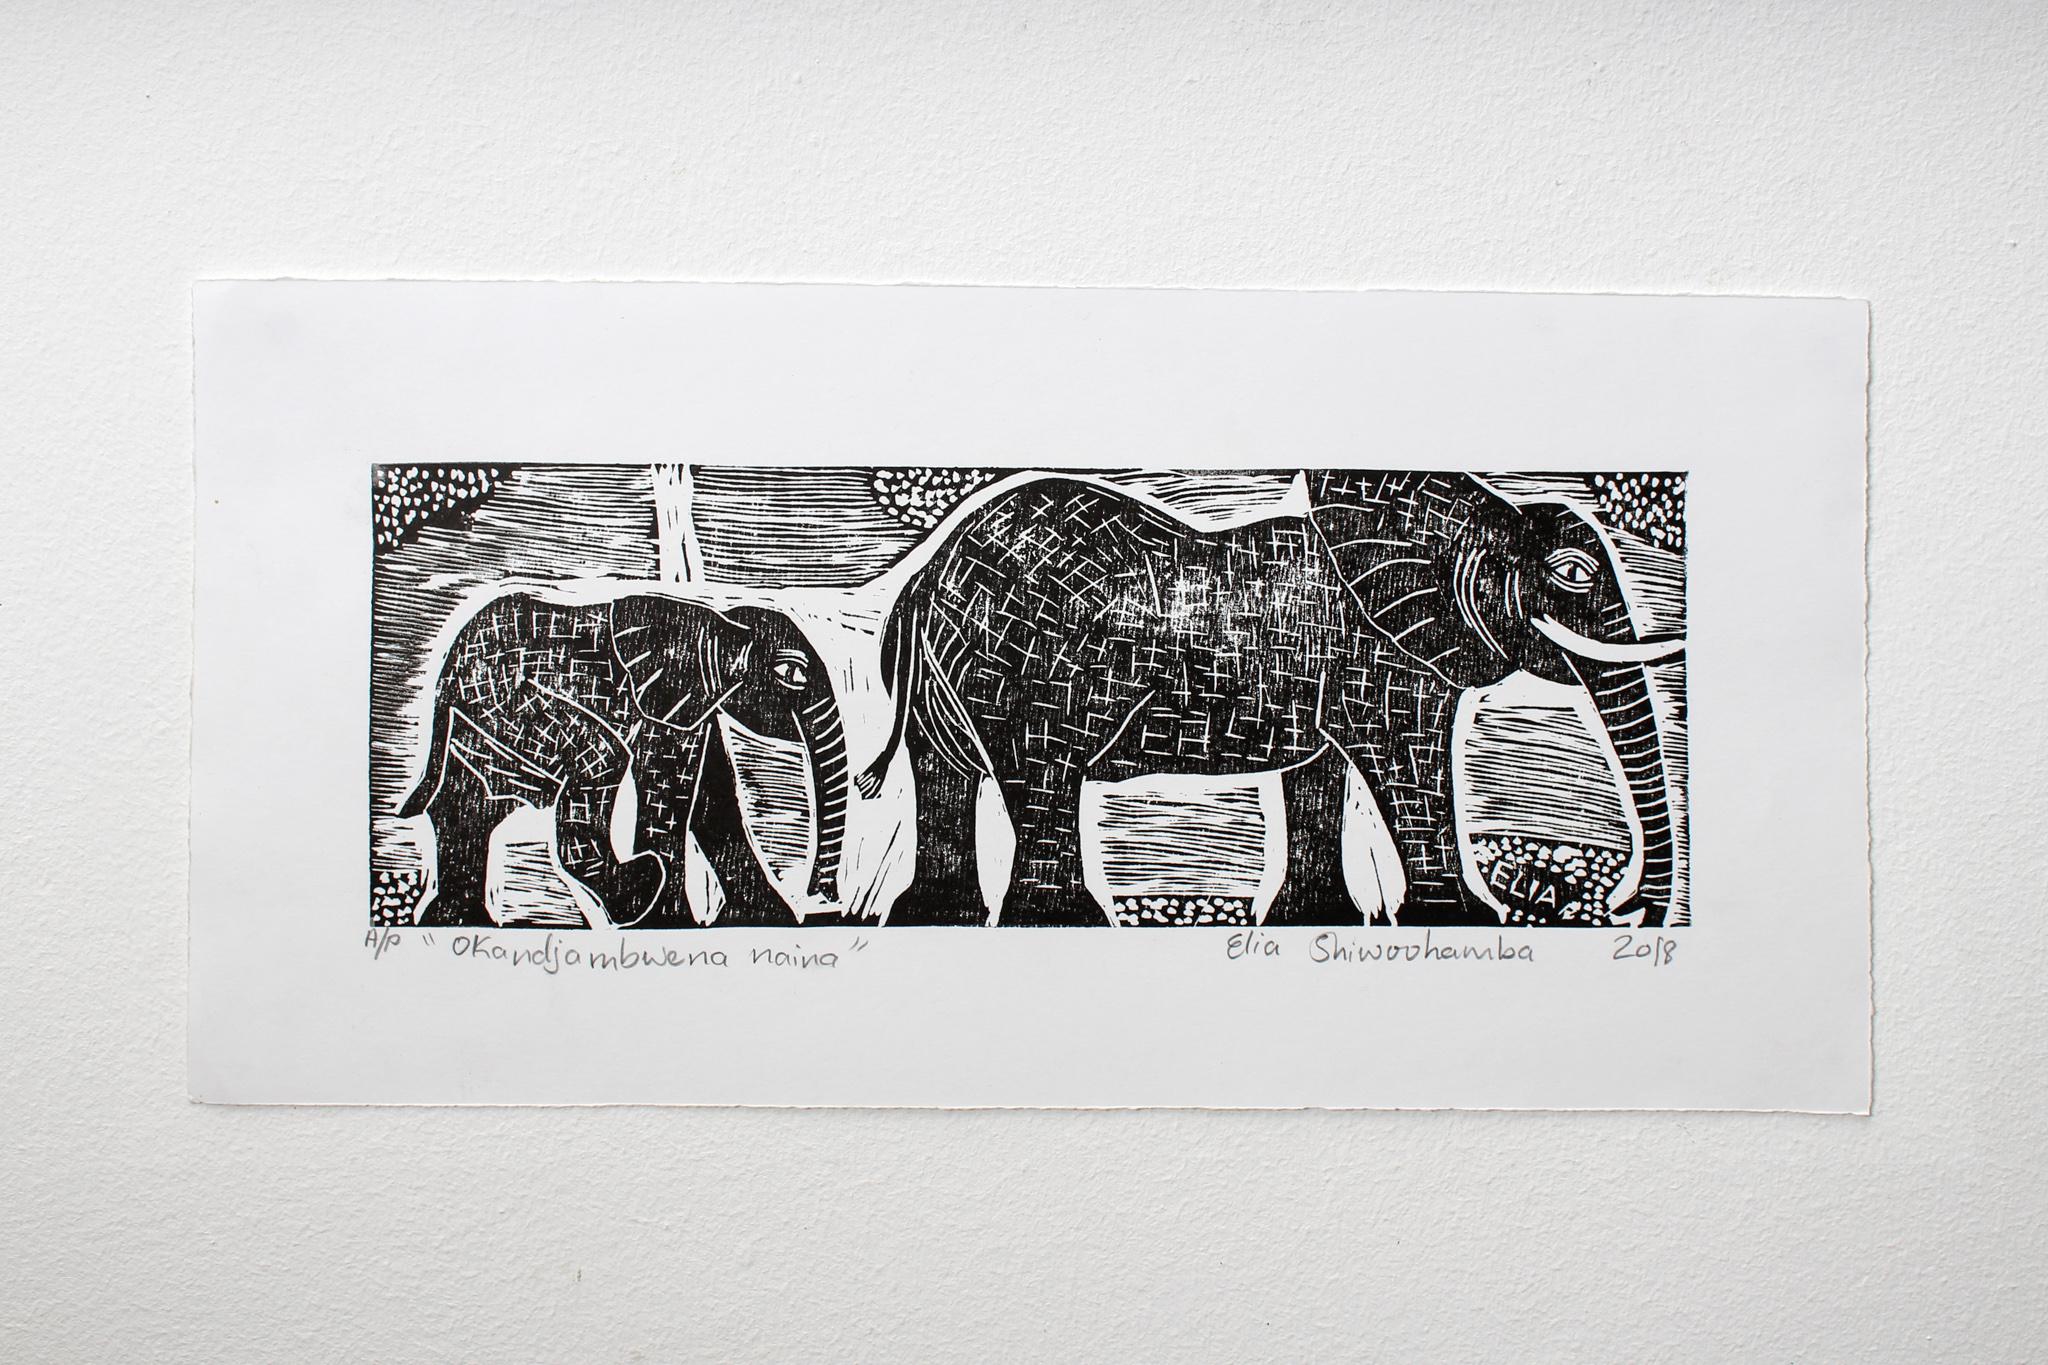 Okandjambwena naina, Linoleumdrucke auf Papier.

Elia Shiwoohamba wurde 1981 in Windhoek, Namibia, geboren. Im Jahr 2006 machte er seinen Abschluss am John Muafangejo Art Centre in Windhoek. Shiwoohamba ist auf Druckgrafik und Bildhauerei